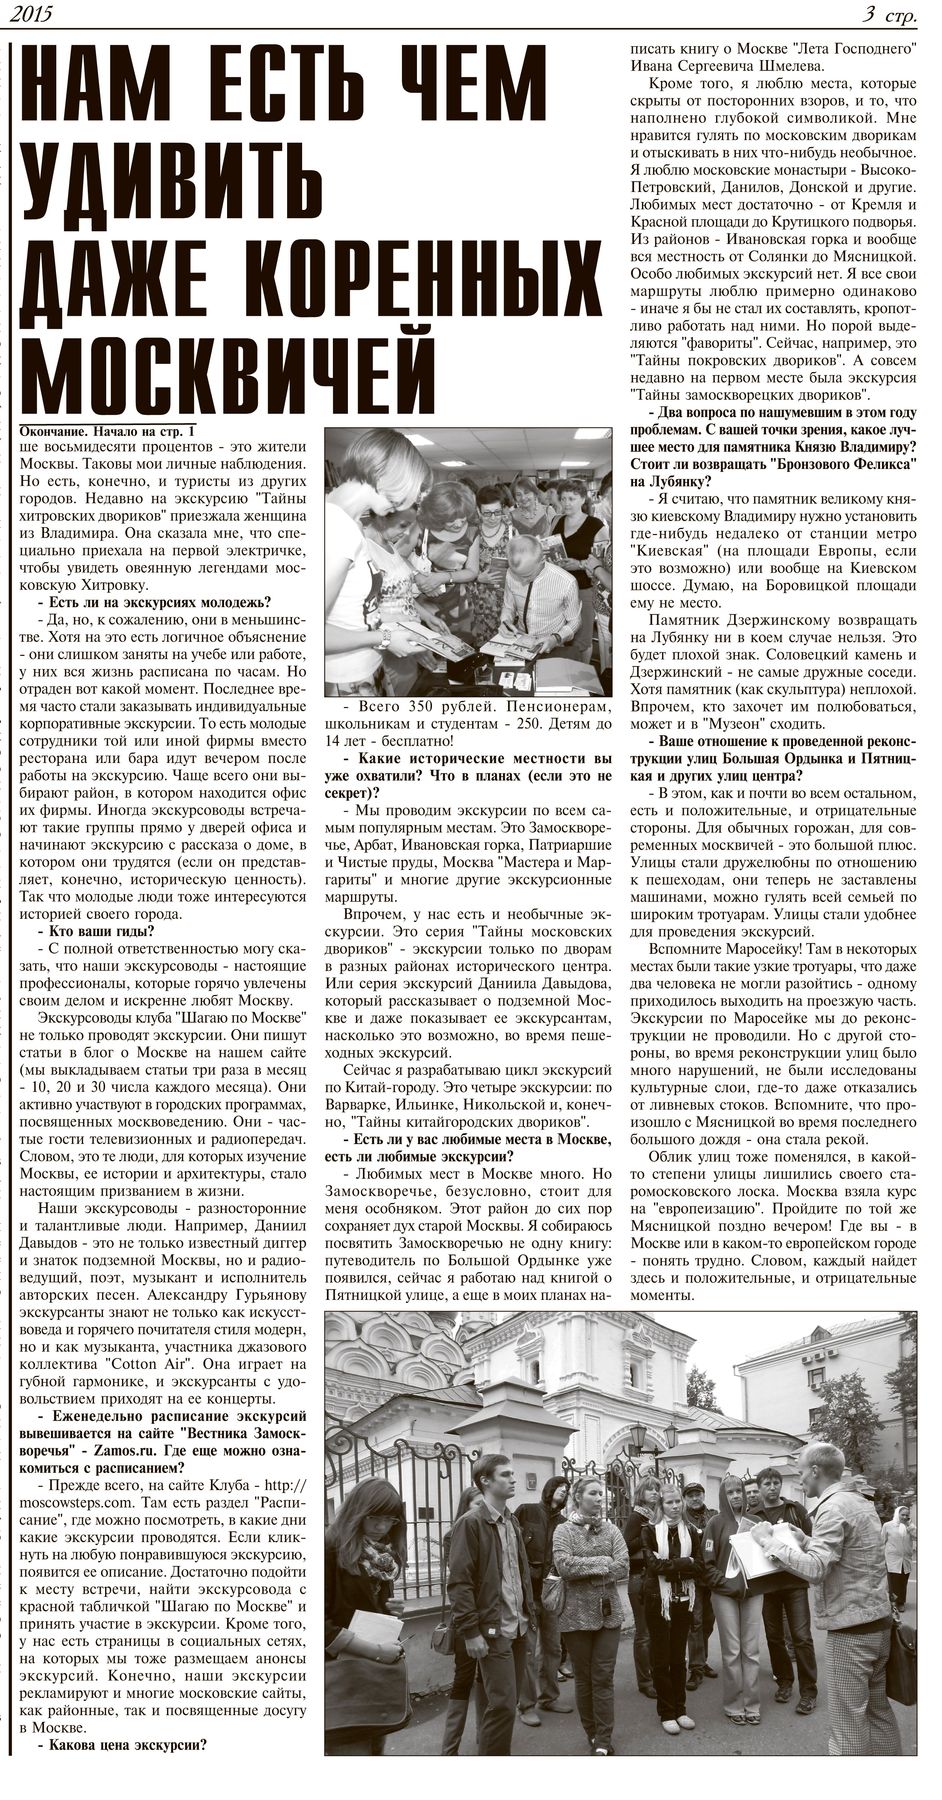 2. Газета «Вестник Замоскворечья». страница № 3